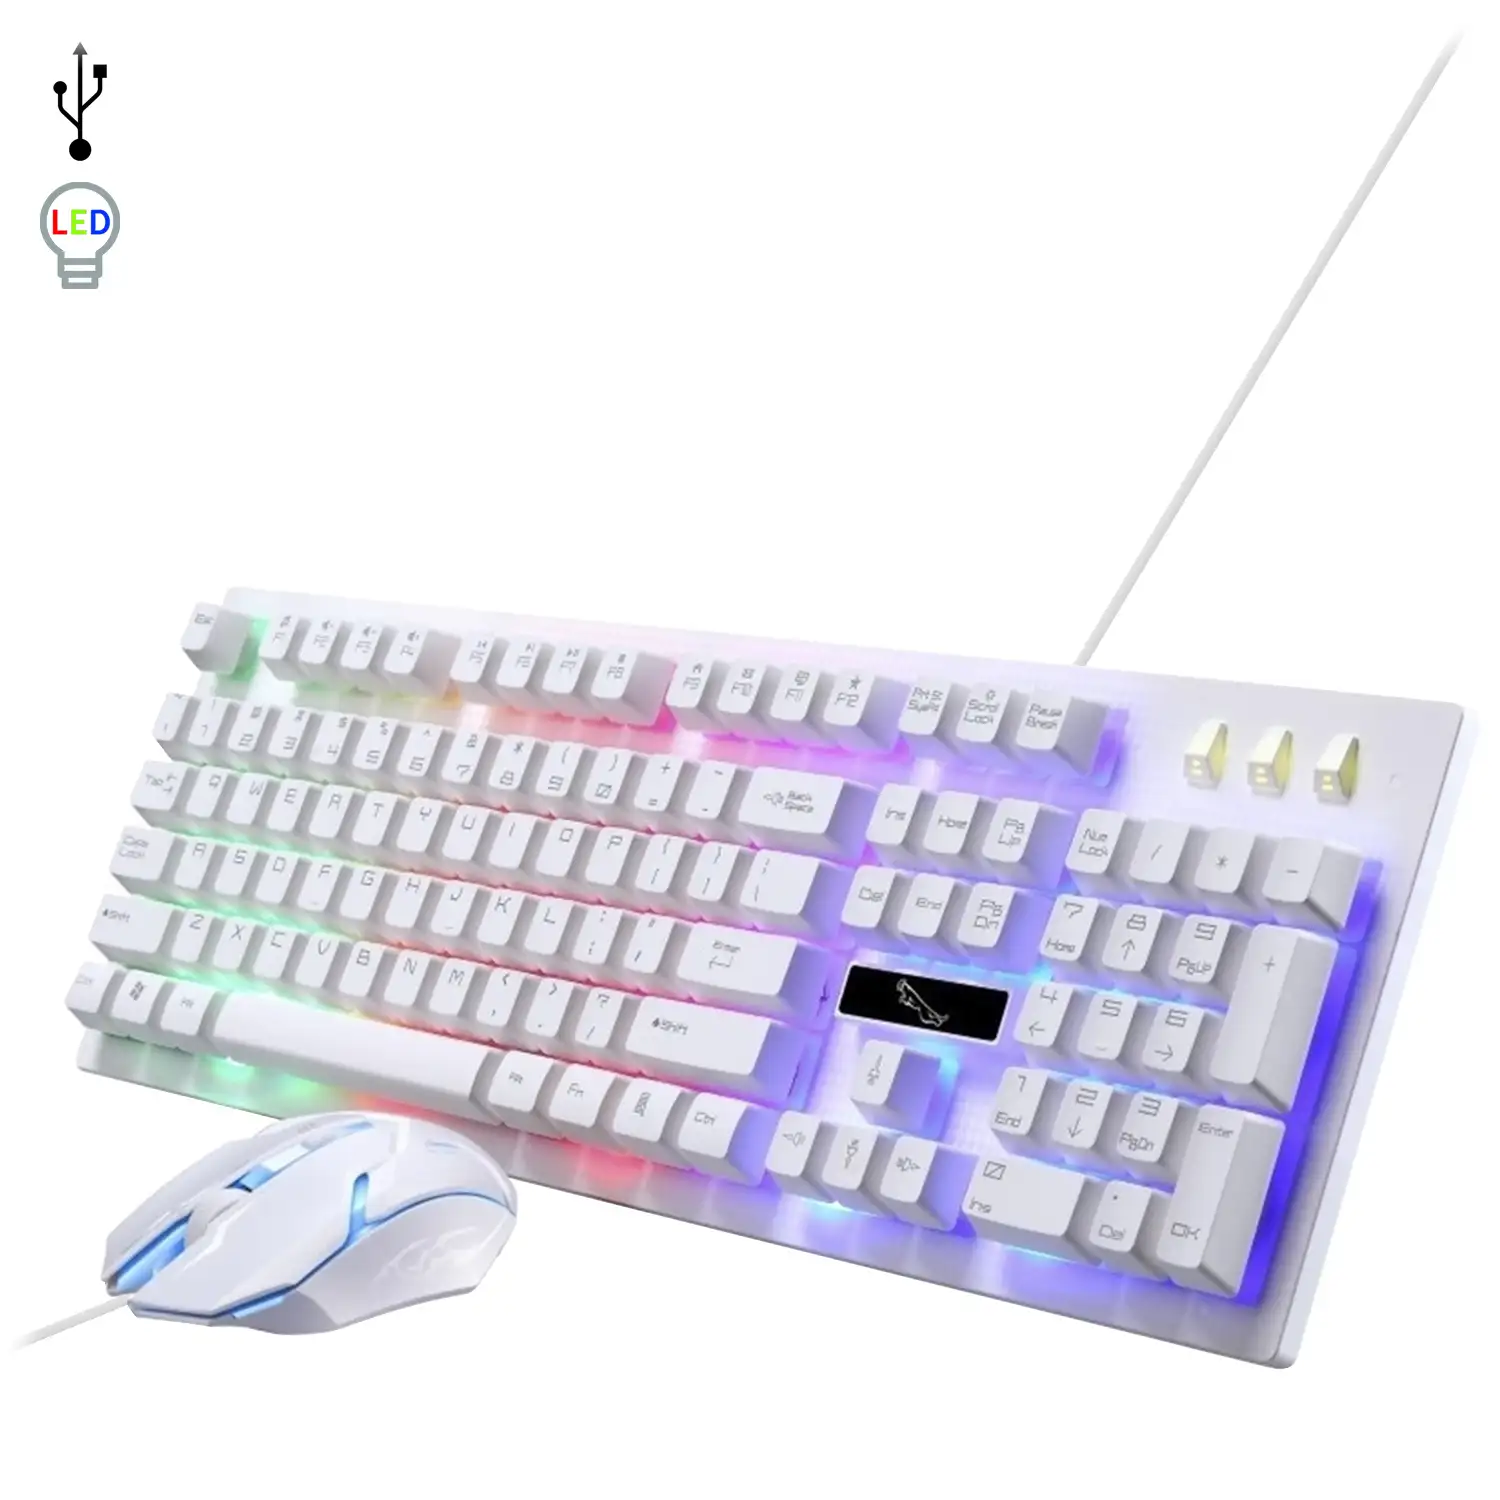 Pack gaming G20 de teclado y ratón con luces RGB. Ratón 1600dpi.